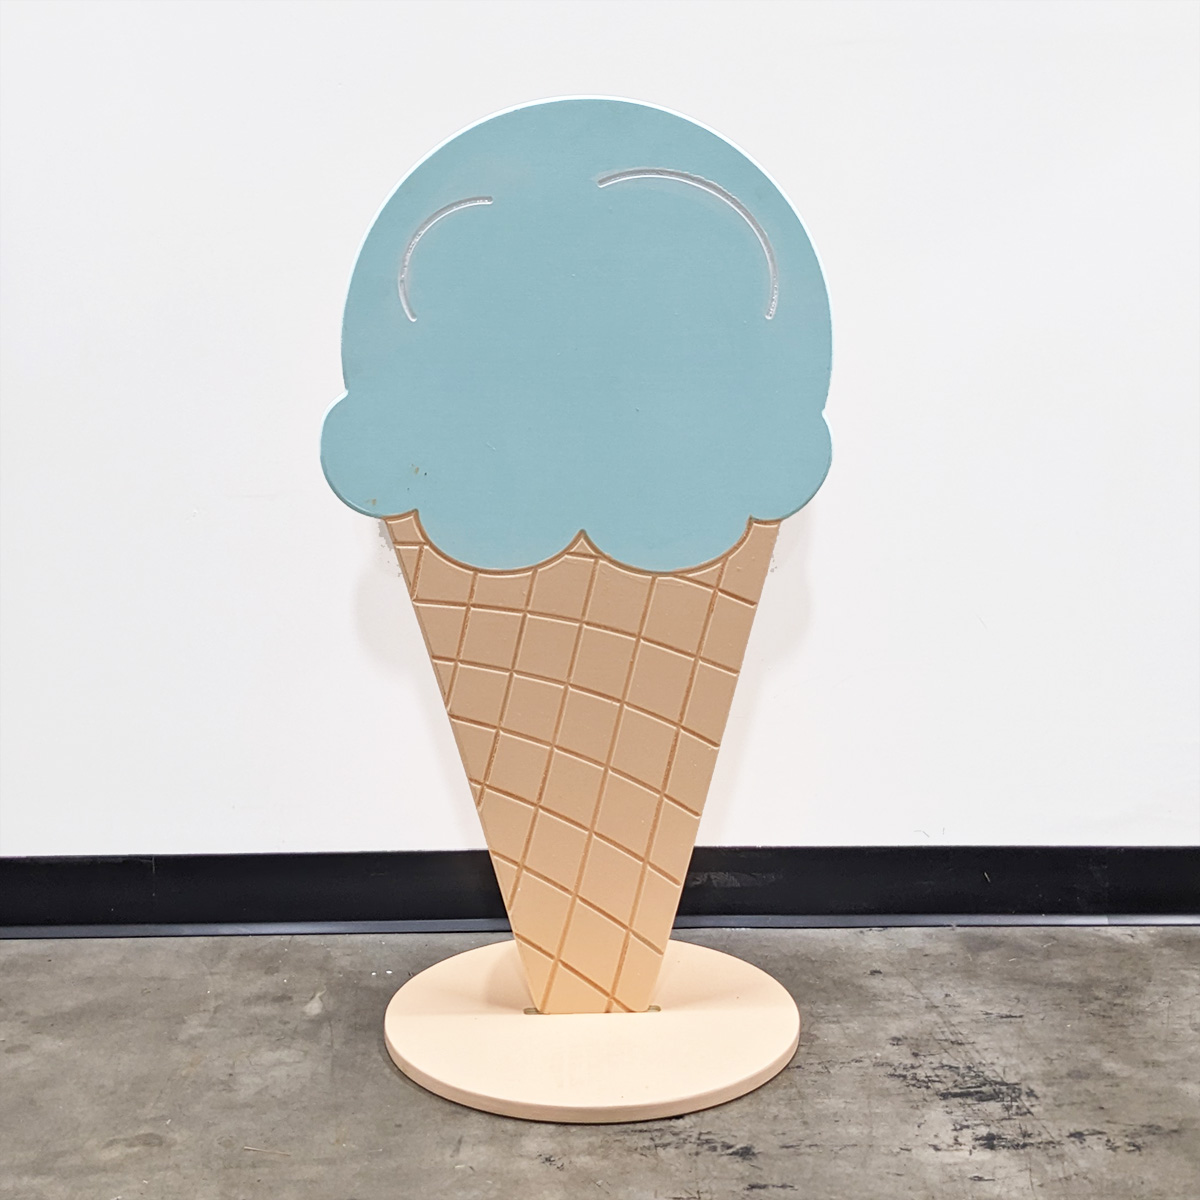 Ice Cream Cone (1 Scoop)